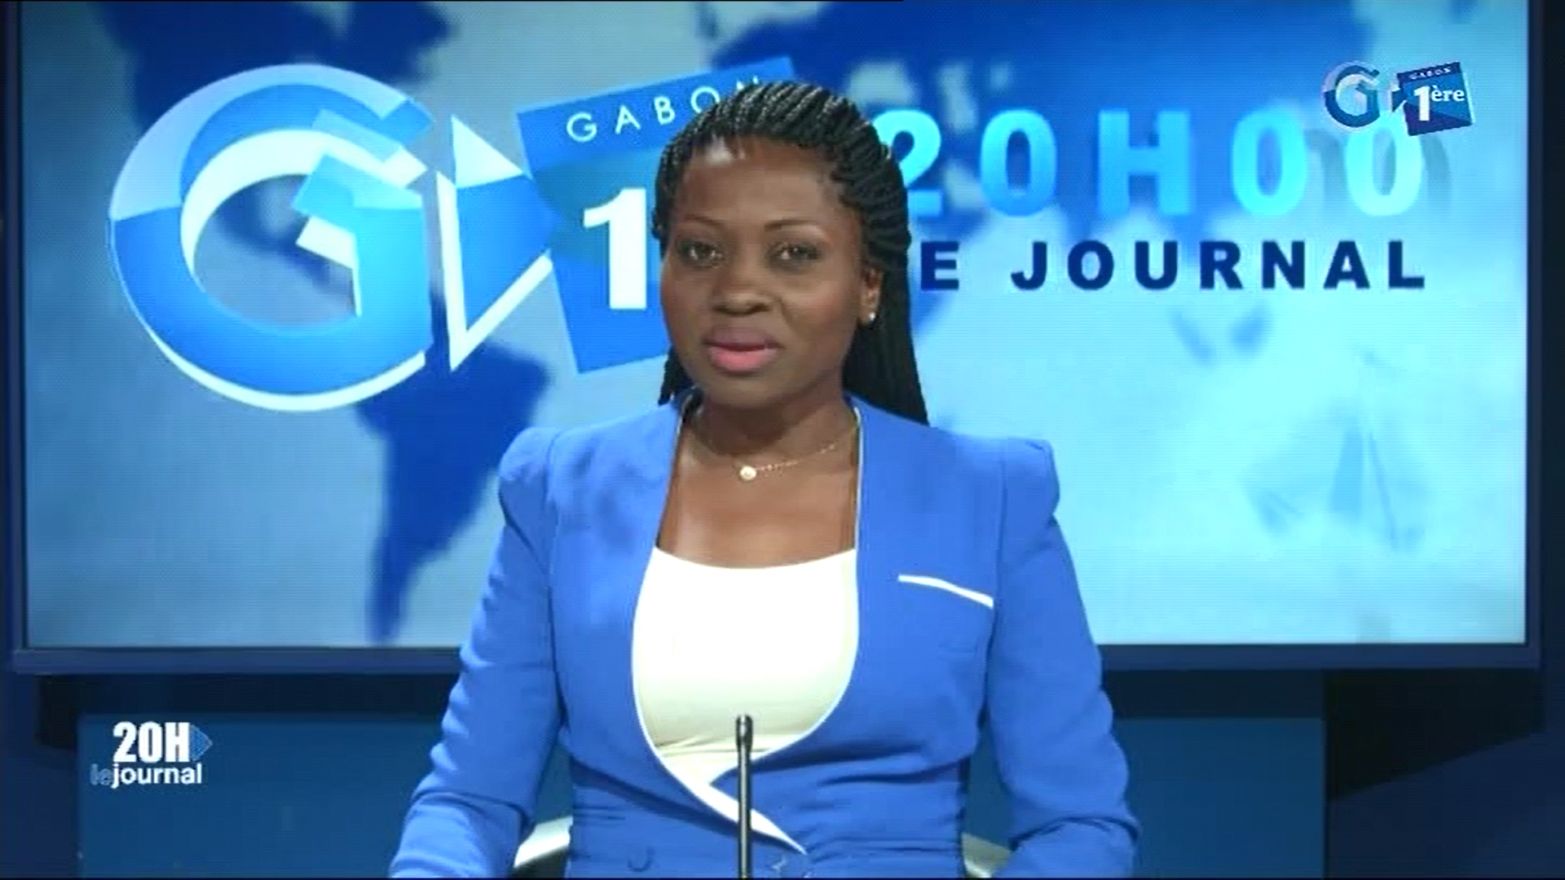 Journal télévisé de 20h de Gabon 1ère du 20 août 2019
